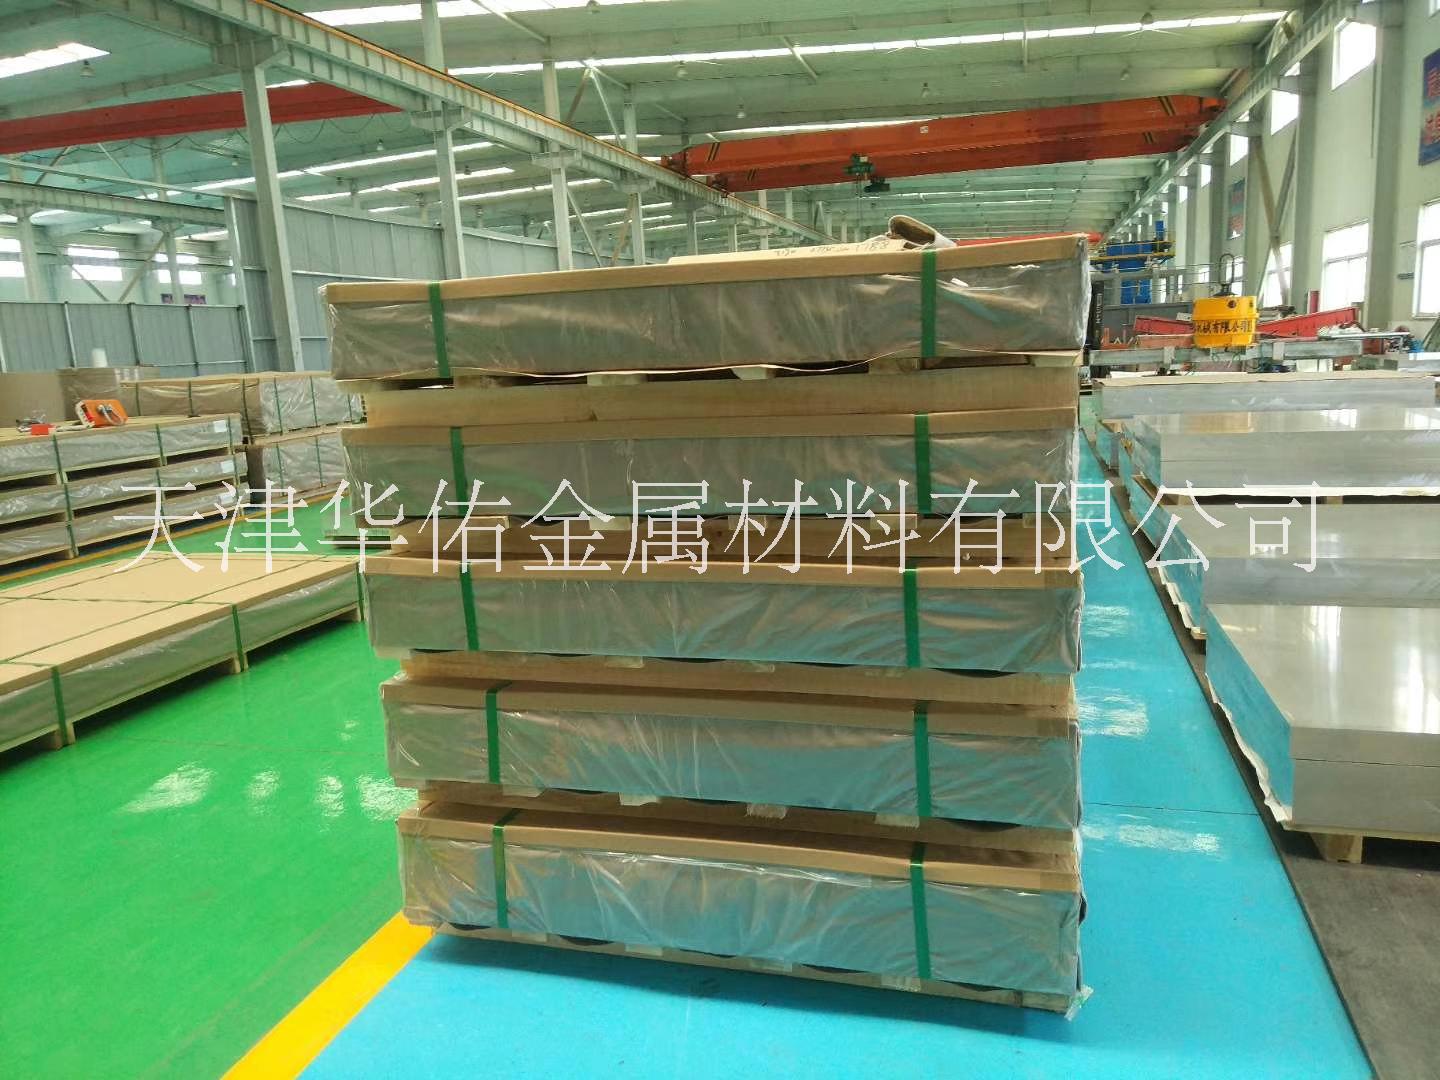 天津市西安铝板铝棒厂家供应航空铝板模具铝板进口铝板铝棒6061 7075铝板铝棒 西安铝板铝棒